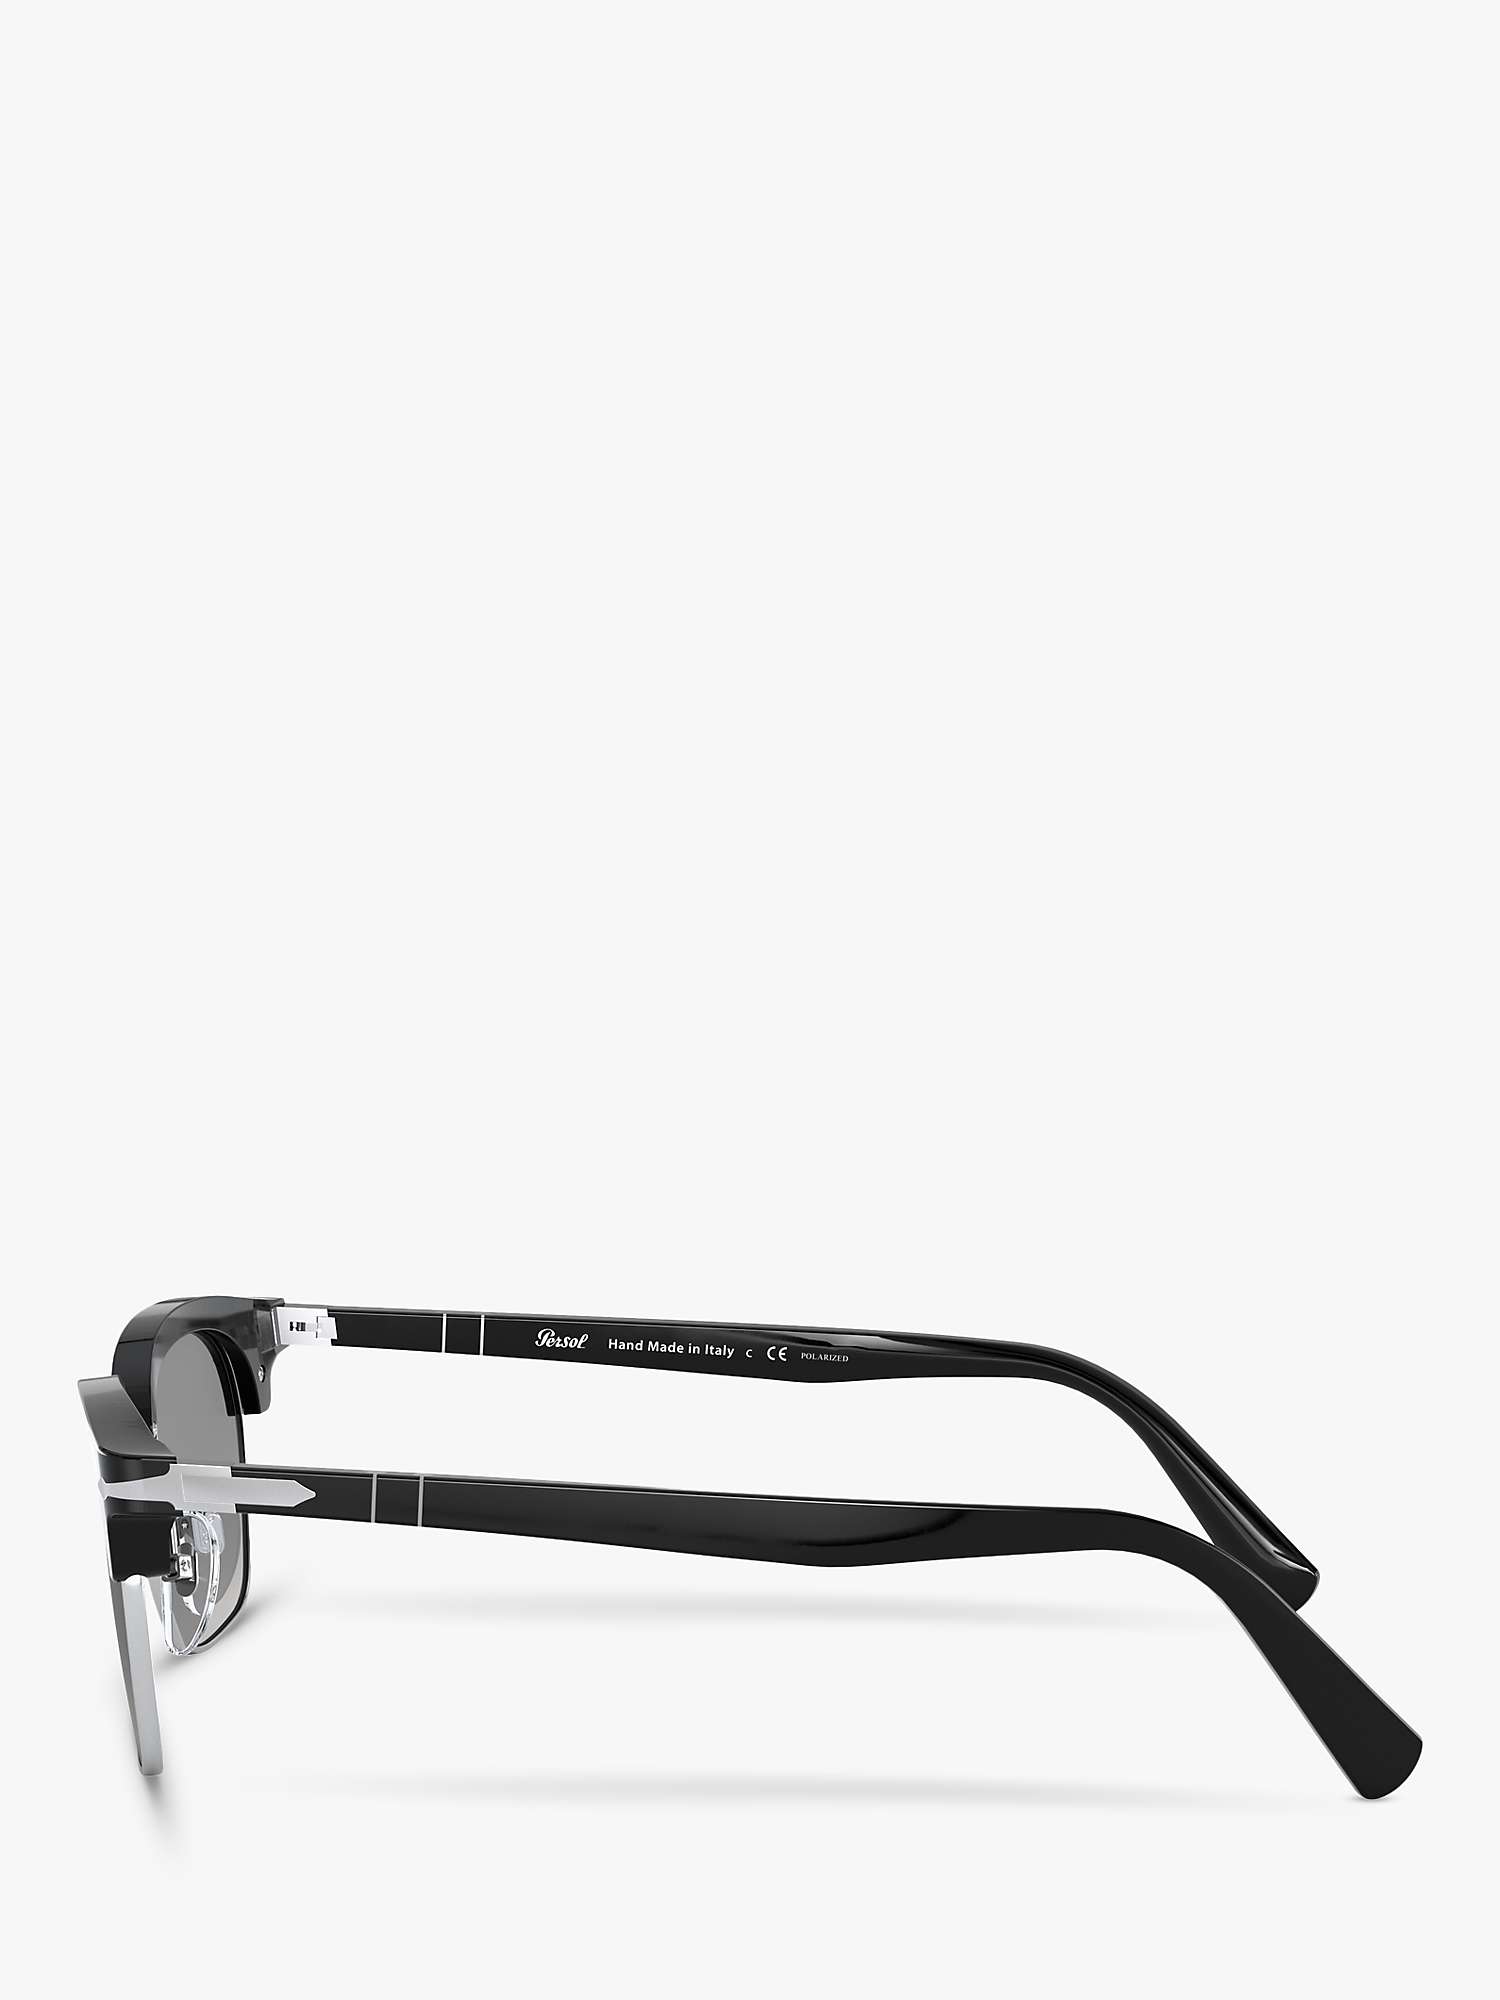 Buy Persol PO3199S Unisex Polarised Square Sunglasses, Black/Grey Gradient Online at johnlewis.com